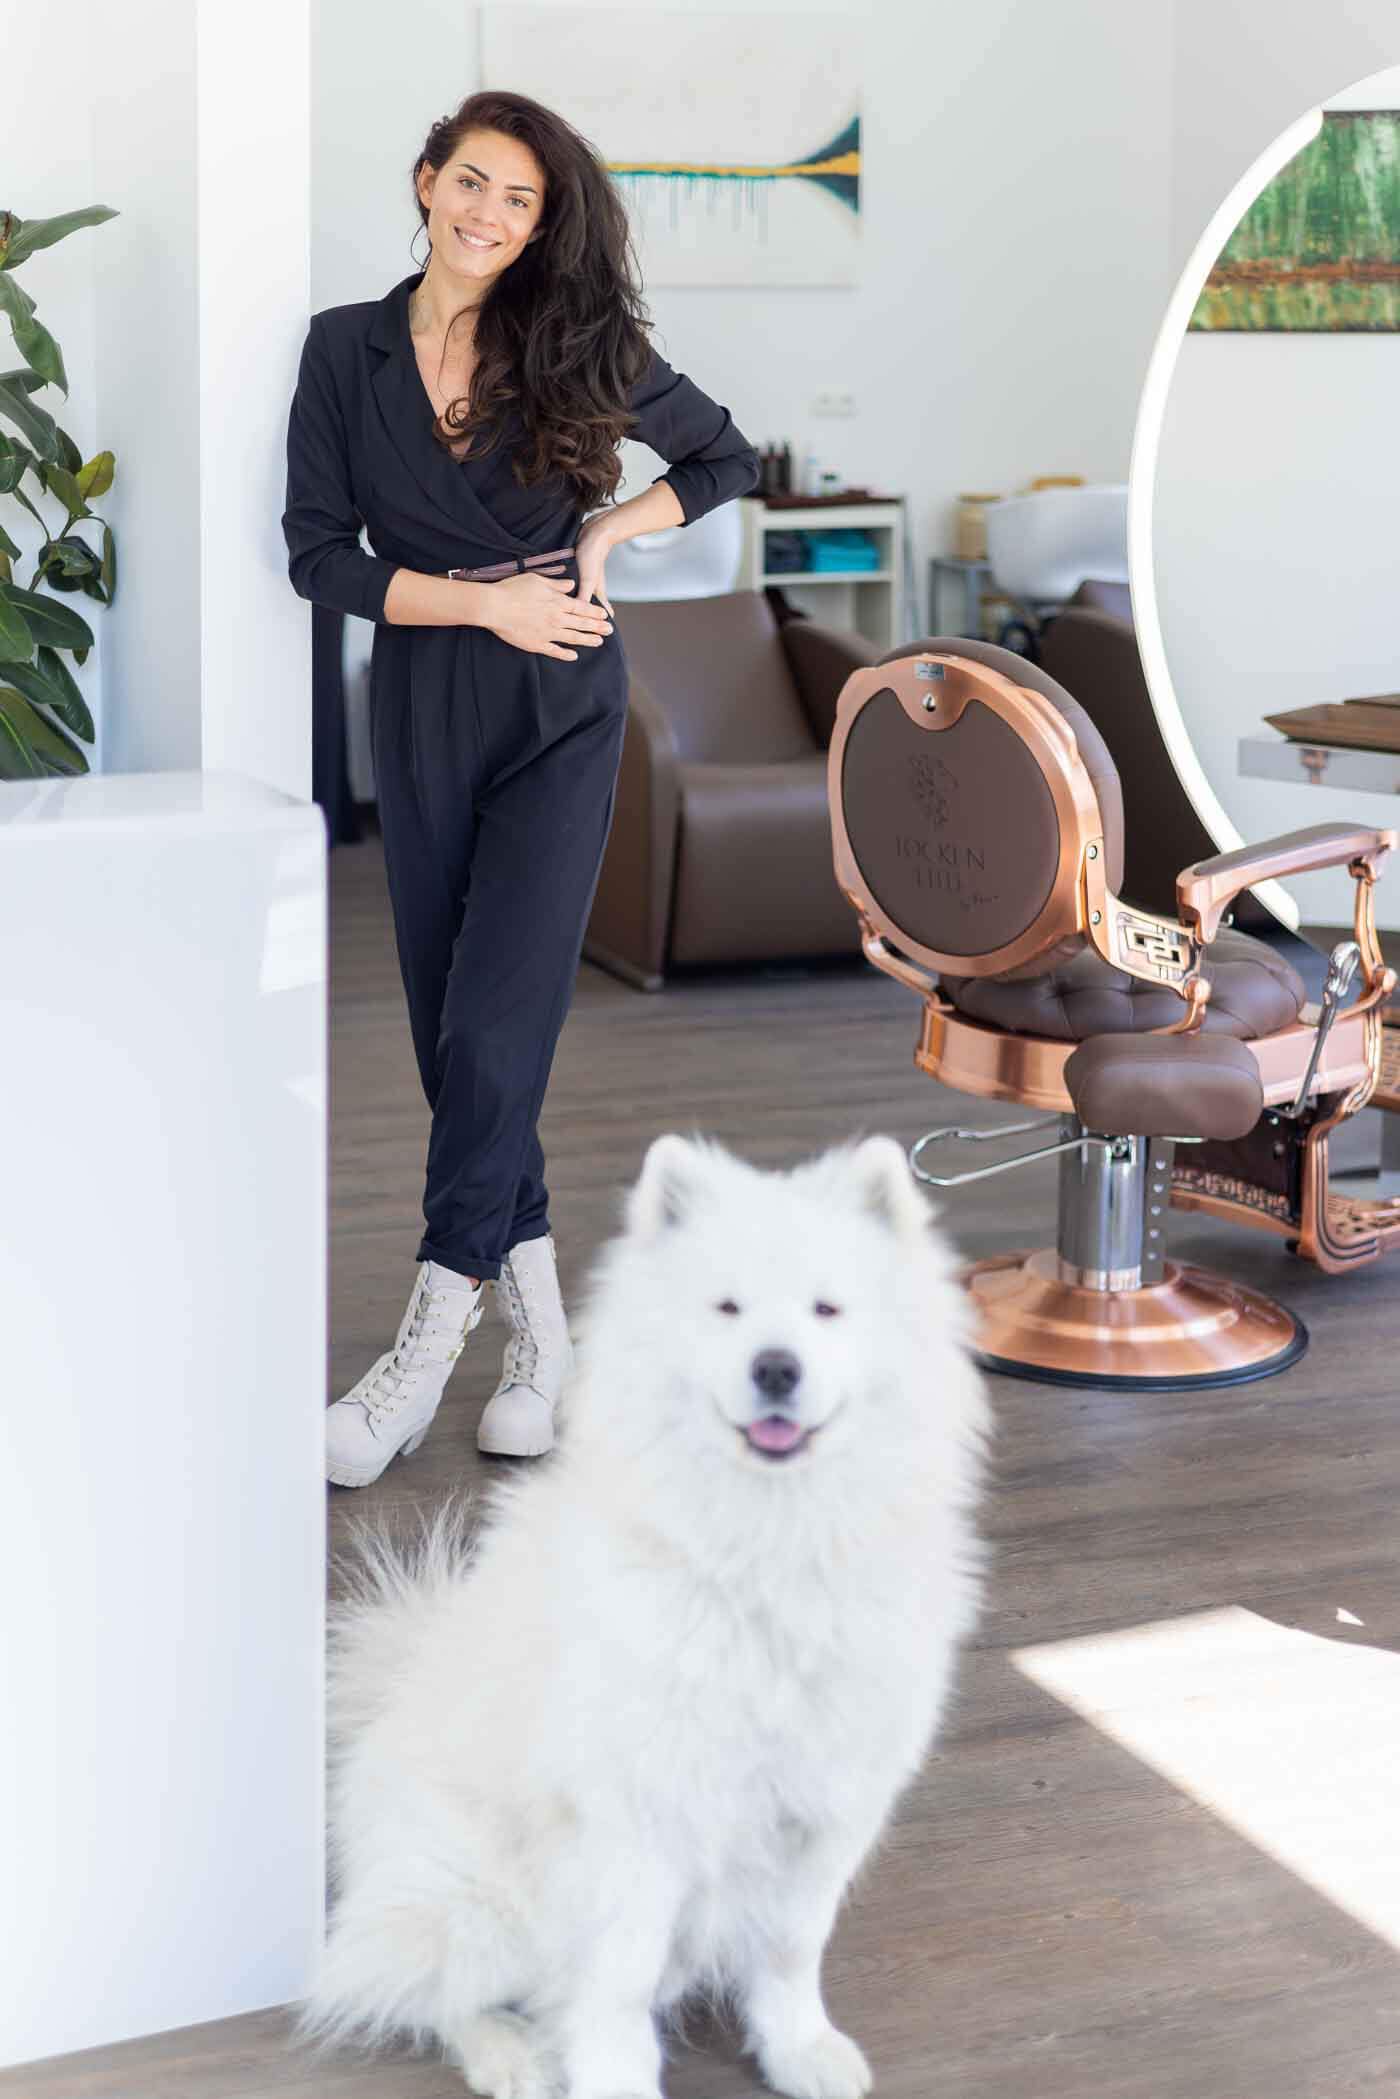 Naturfriseur Locken Elite, Inhaberin Tessa mit ihrem Hund im Salon